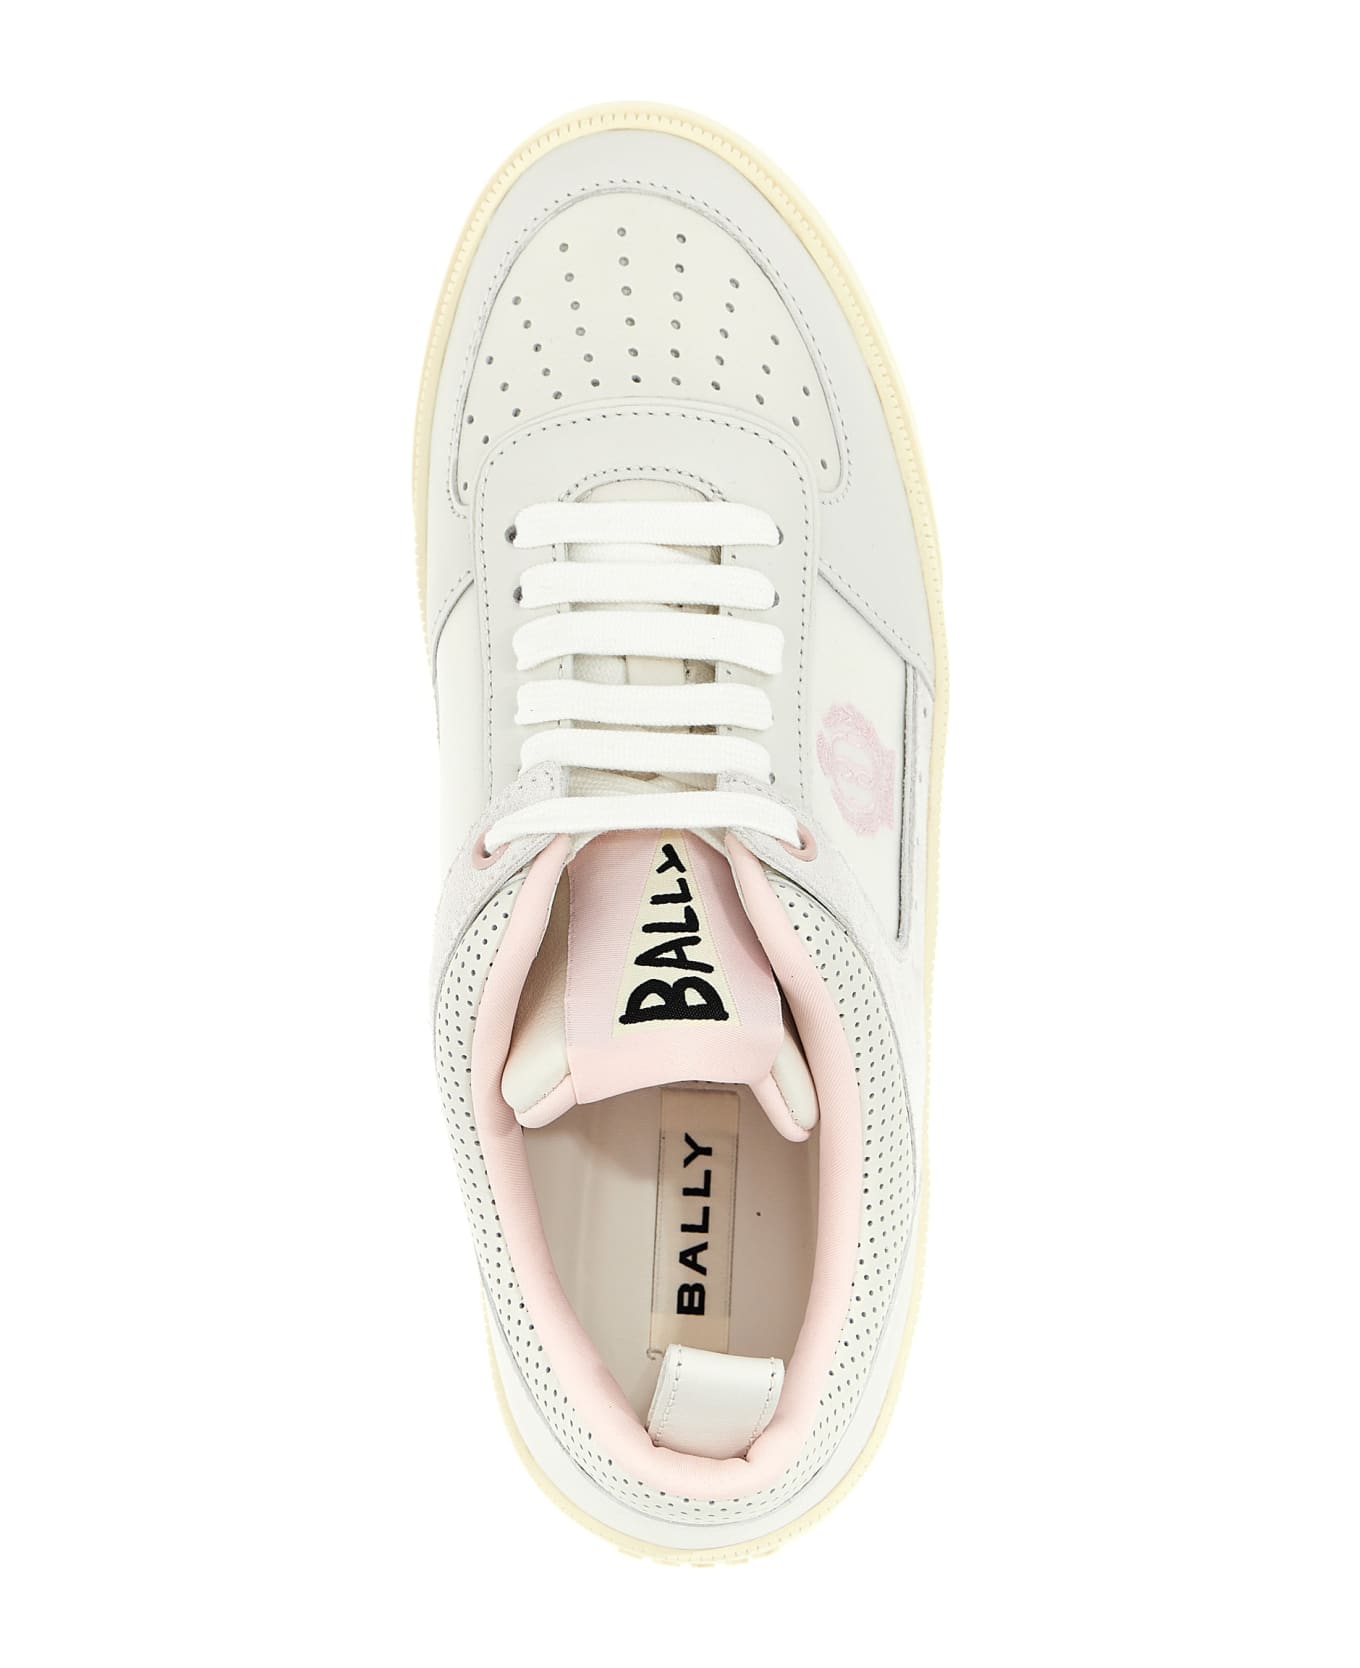 Bally 'riweira' Sneakers - Pink